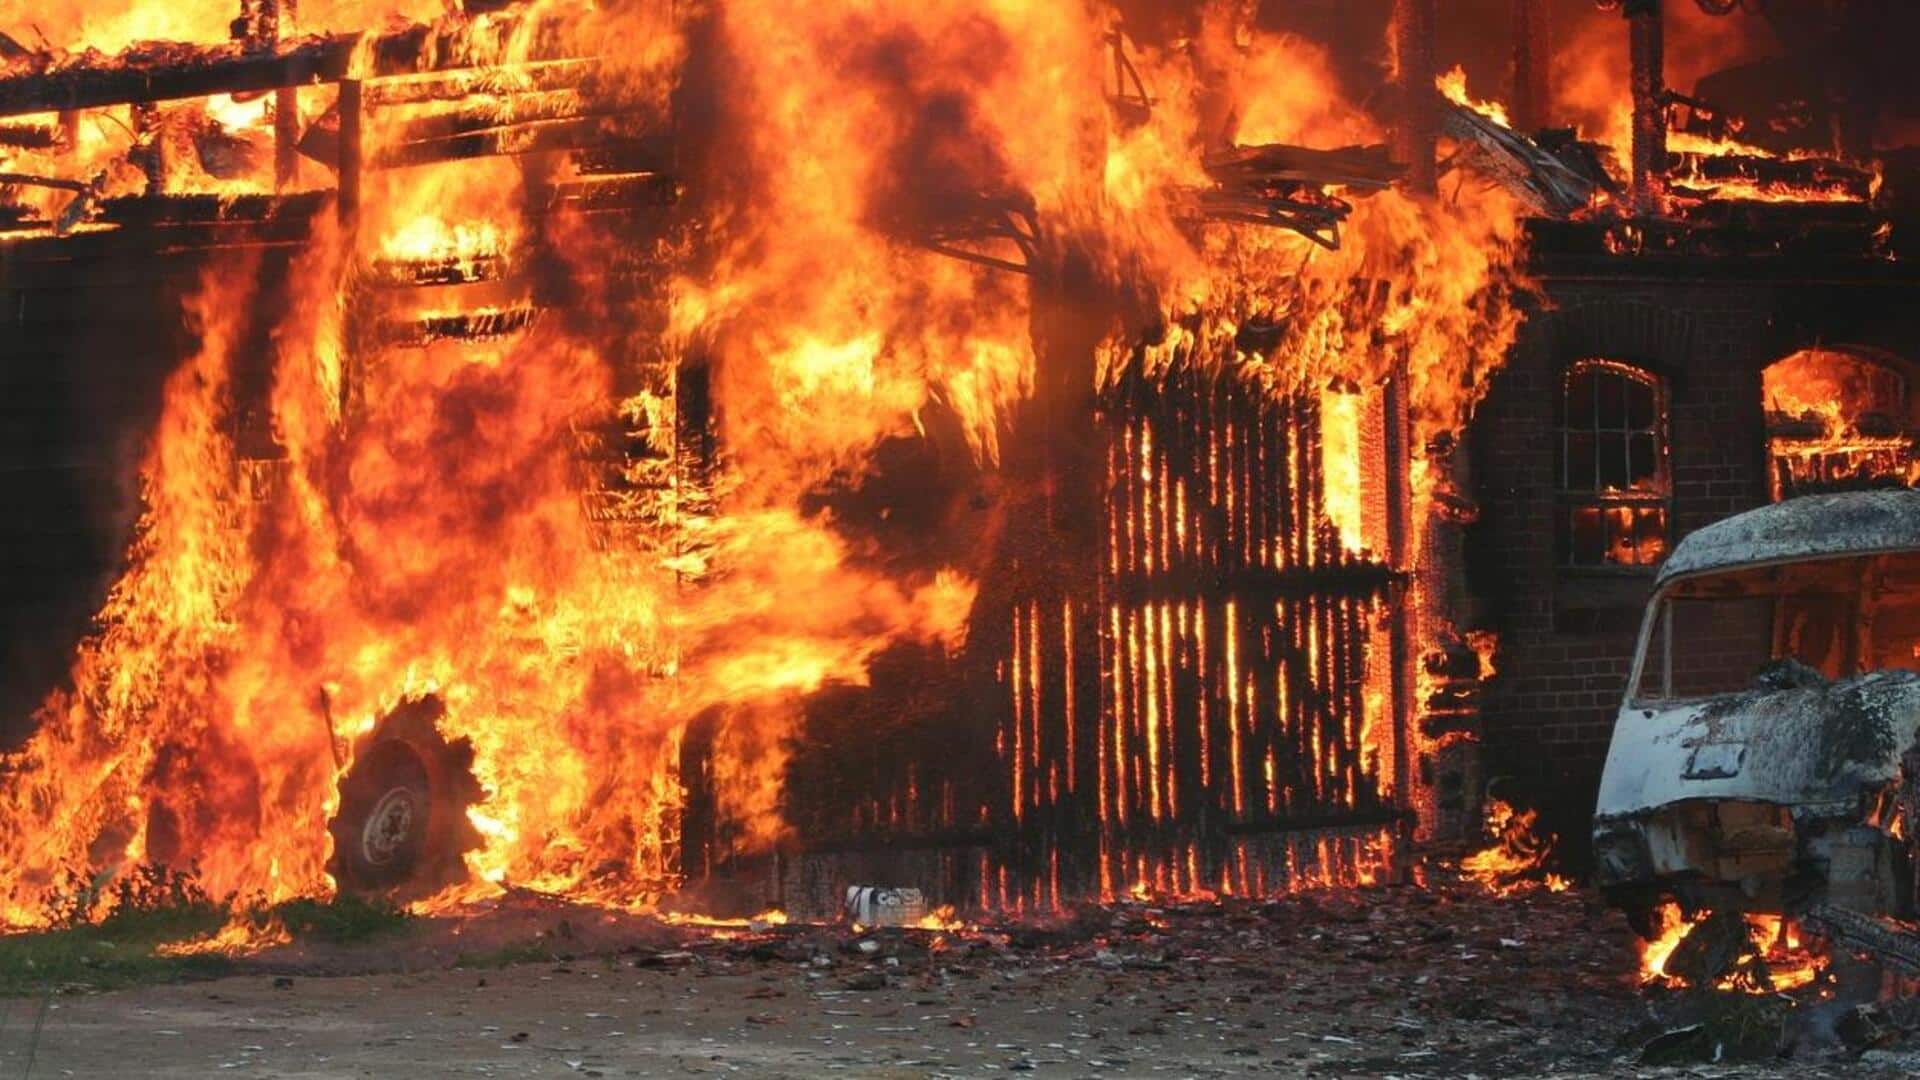 तेलंगाना: हैदराबाद के 4 मंजिला अपार्टमेंट में लगी भीषण आग, 7 की जलकर मौत